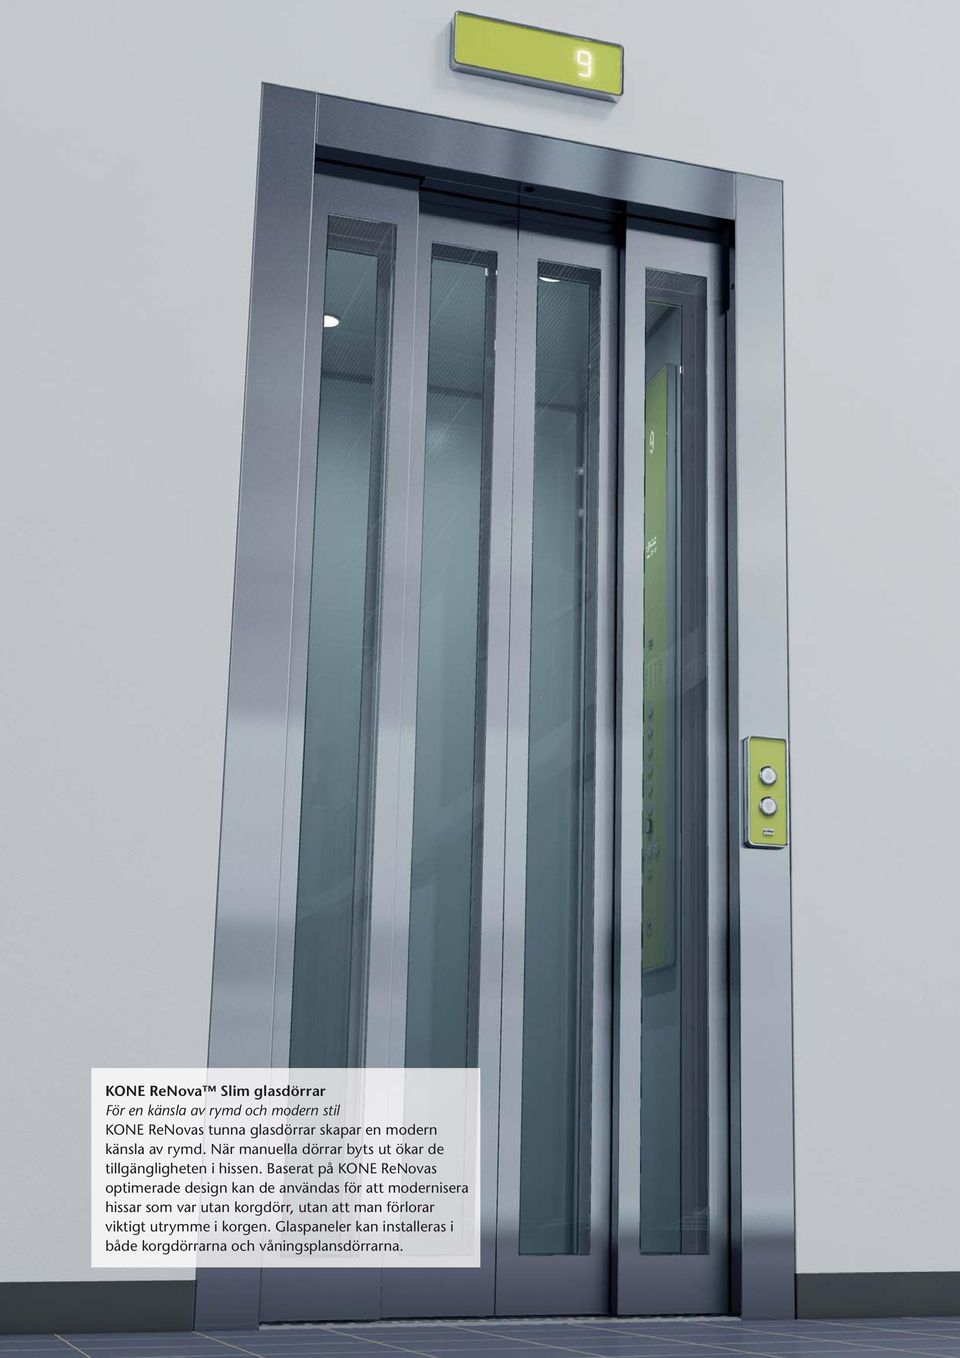 Baserat på KONE ReNovas optimerade design kan de användas för att modernisera hissar som var utan